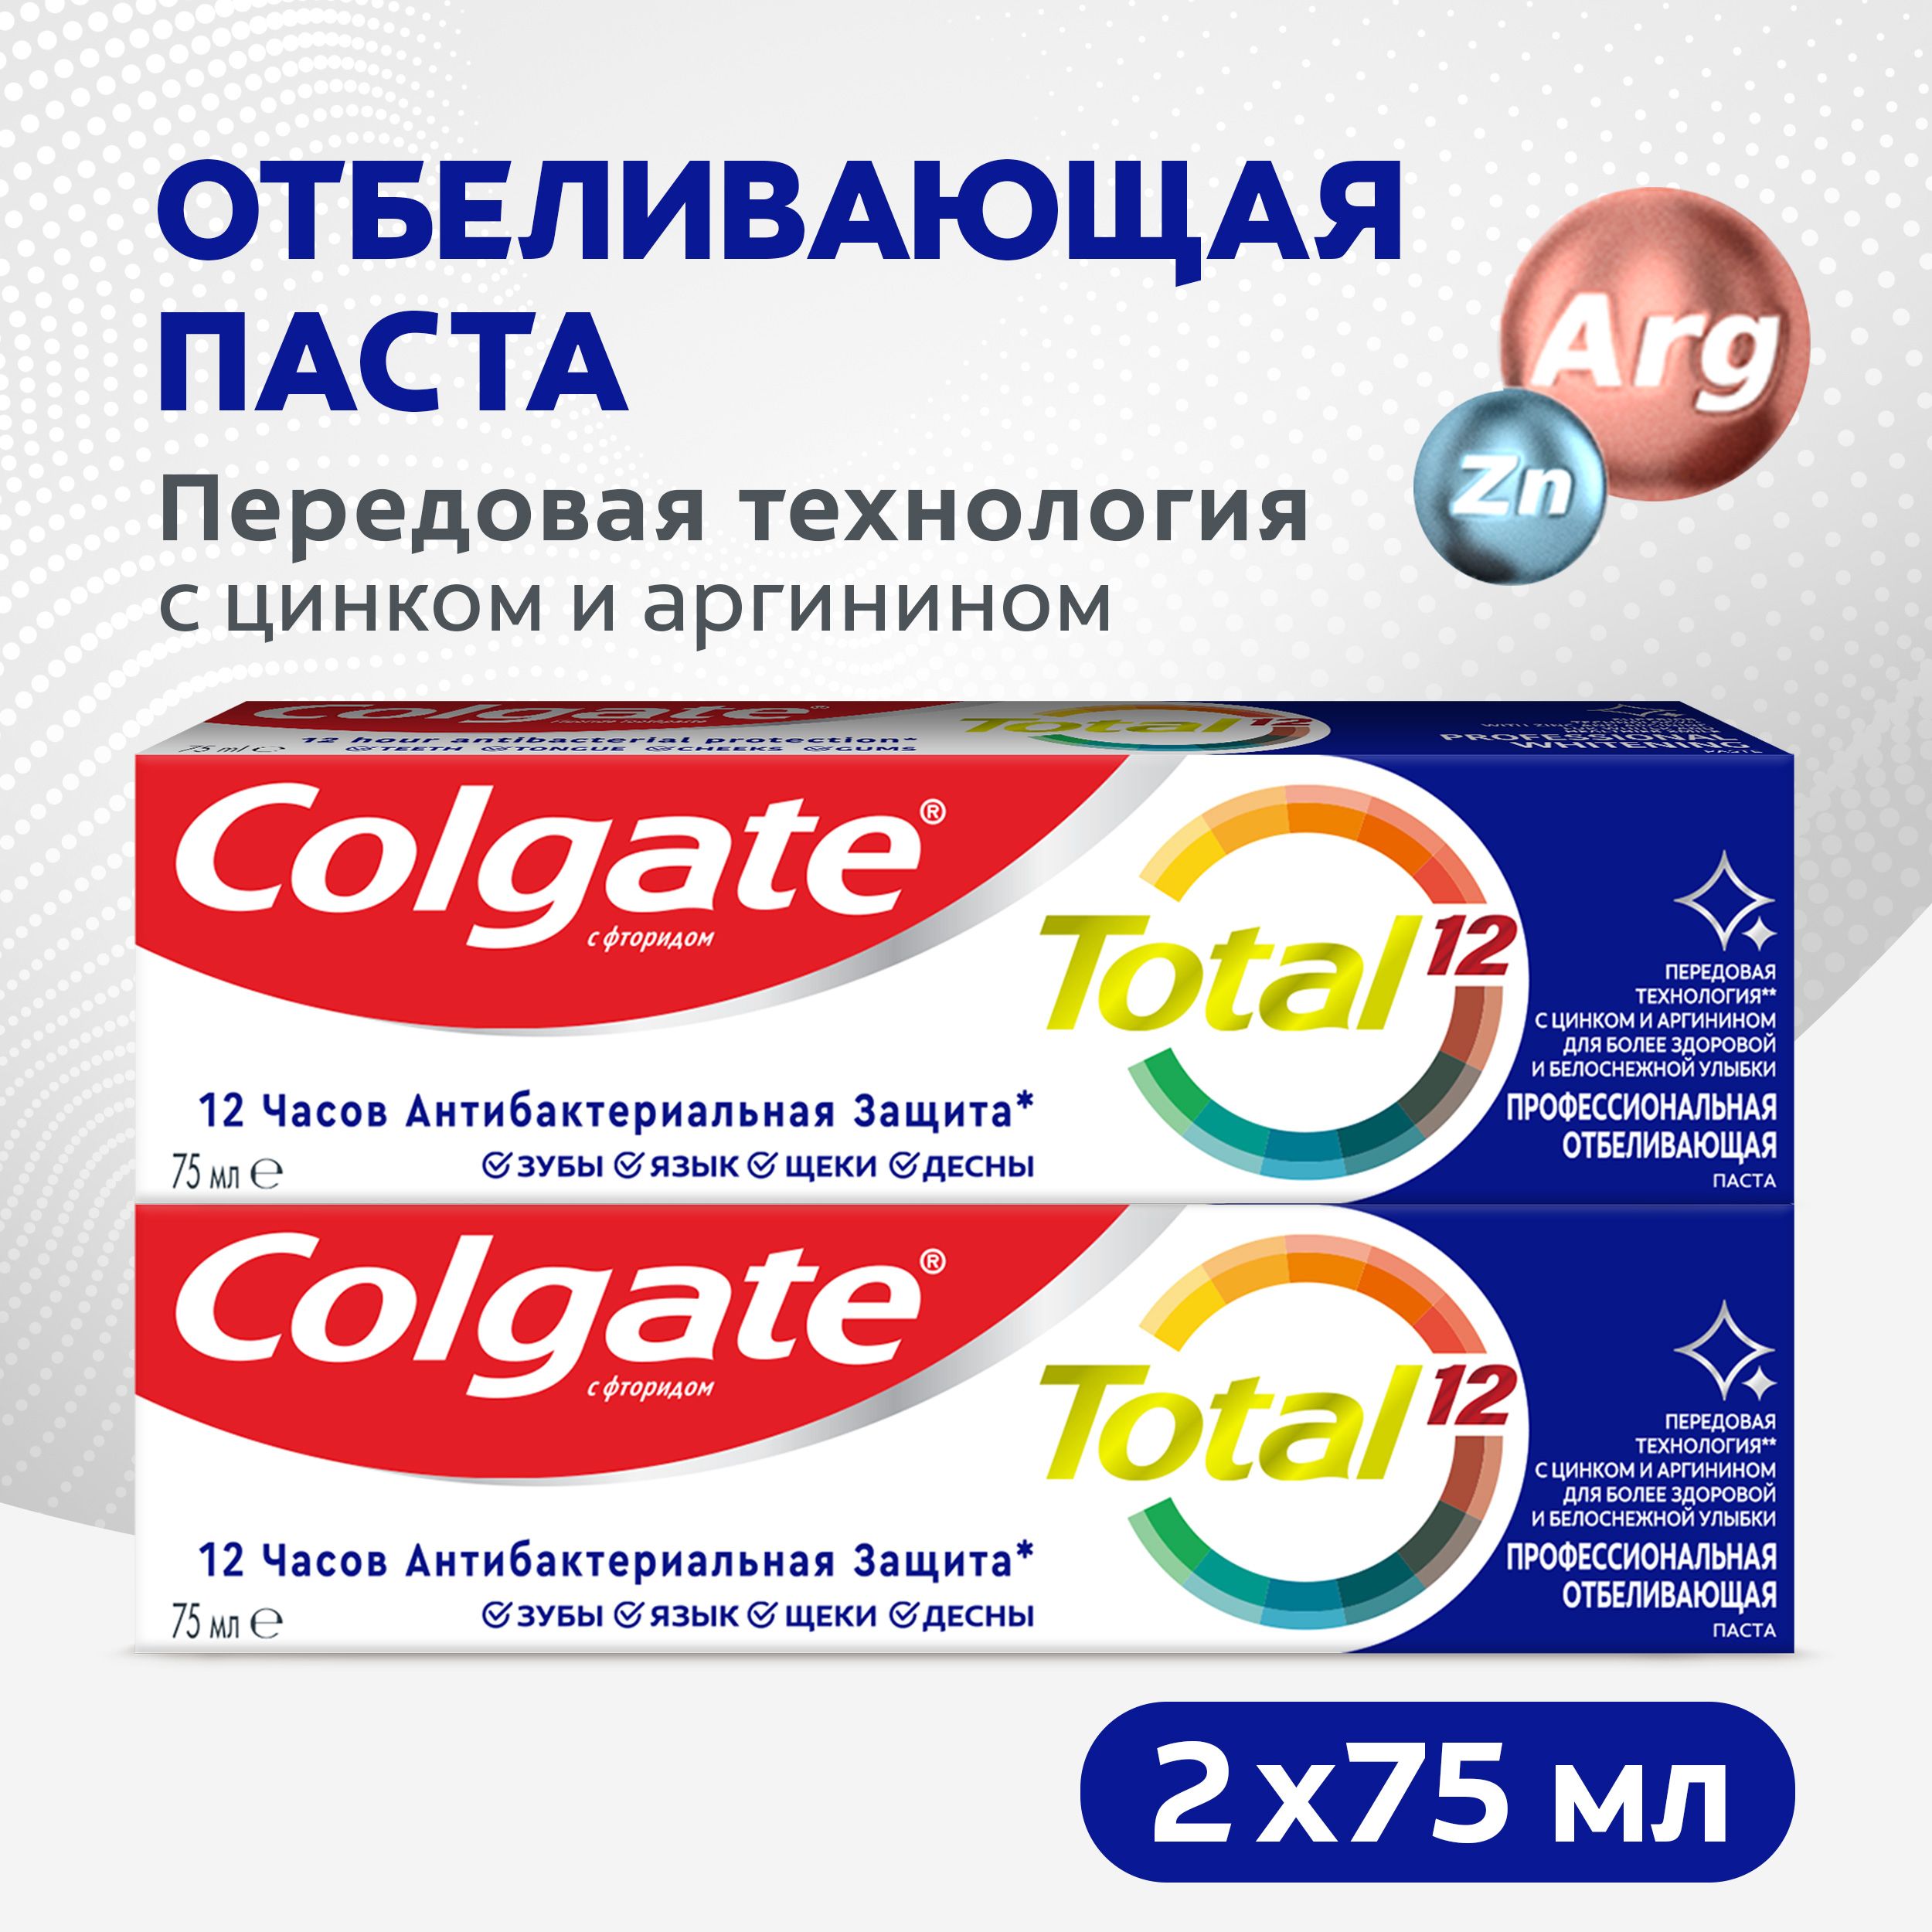 ЗубнаяпастаColgateTotal12ПрофессиональнаяОтбеливающаясцинкомиаргинином(2шт)